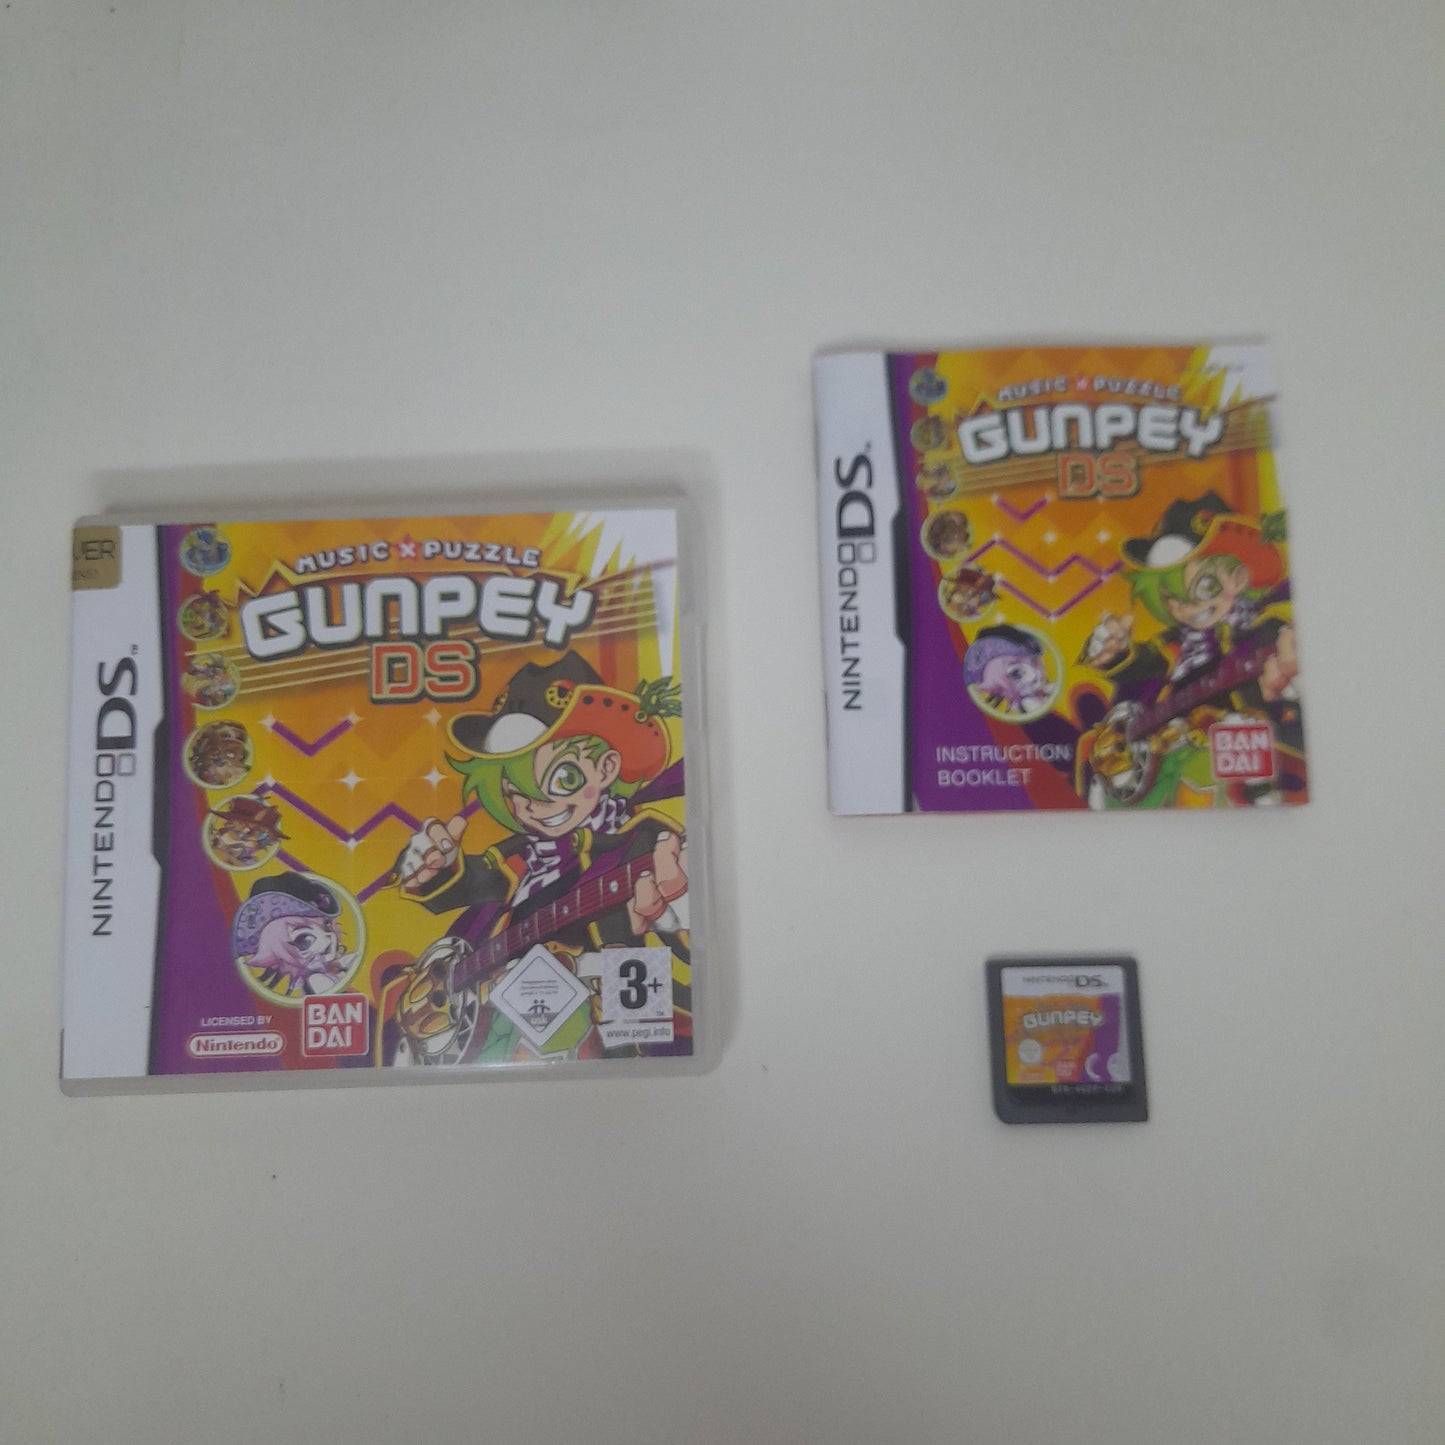 GunPey DS - Musique x Puzzle - Nintendo DS